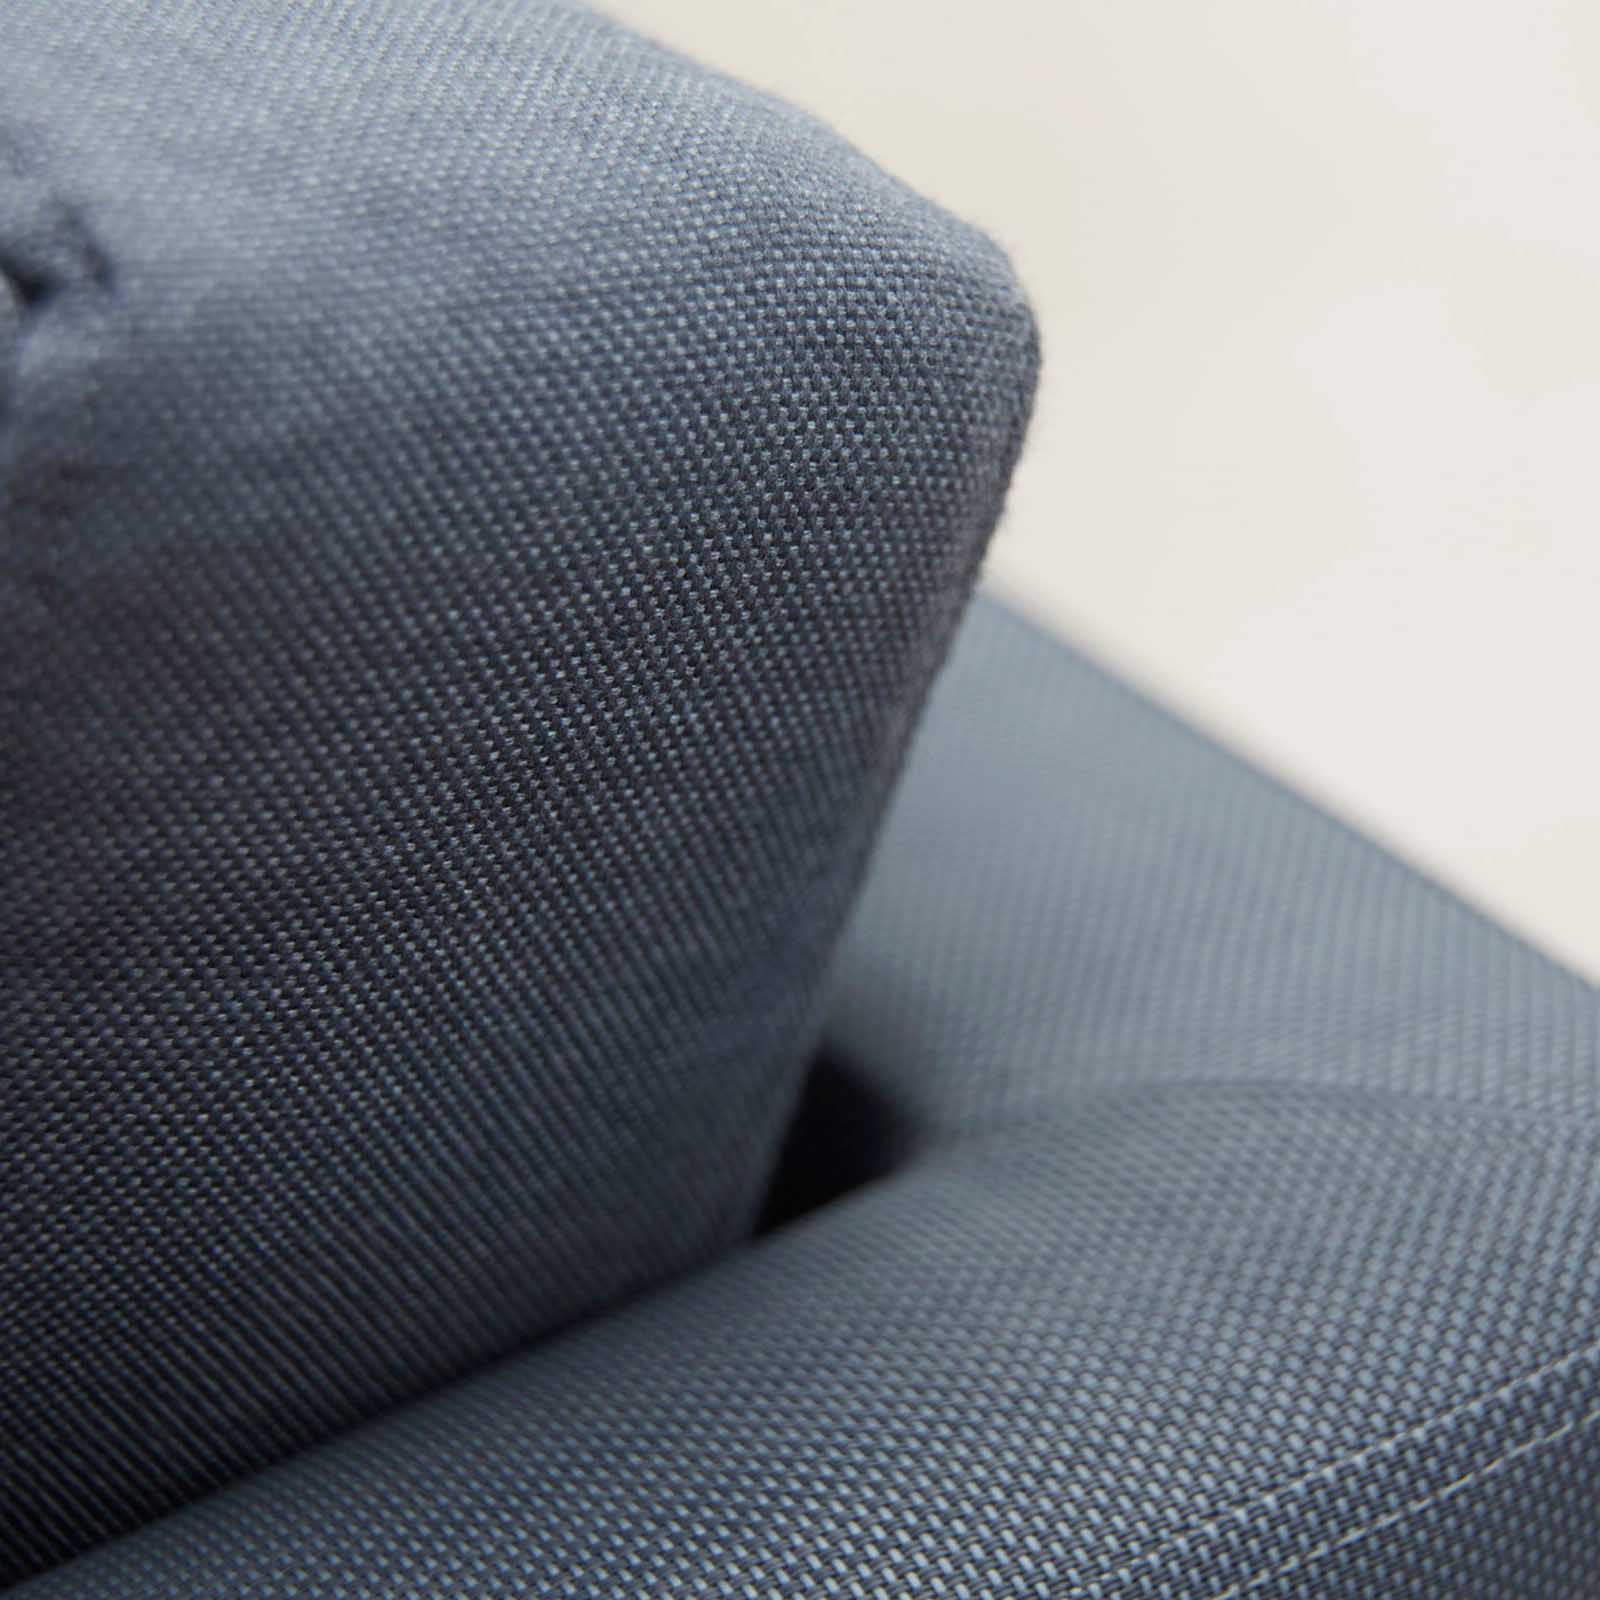 Flex 2-Sitzer Sofamodul für links aus Cane-line Natté in Light Grey